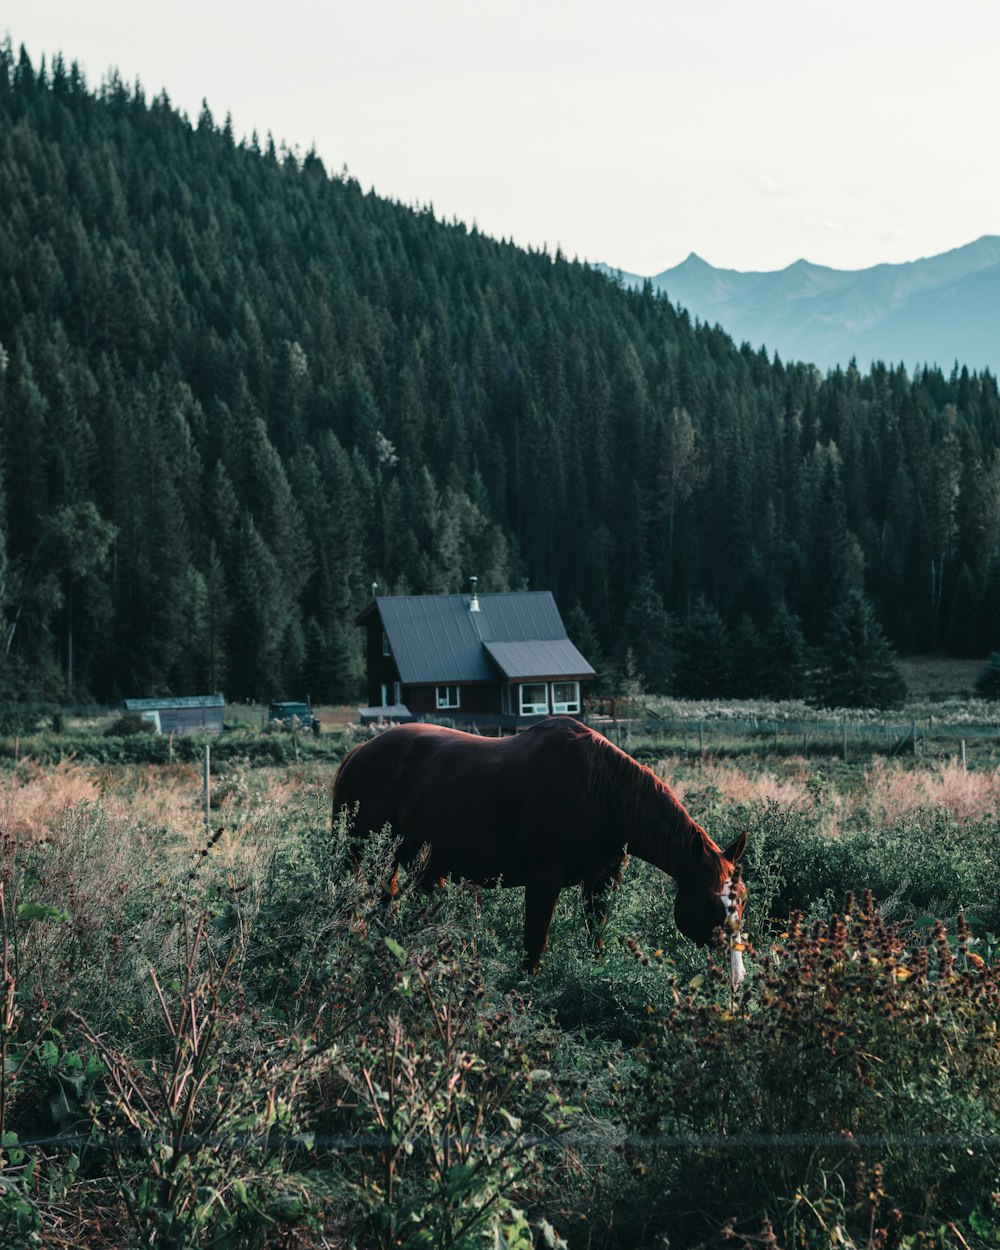 cavalo marrom comendo grama durante o dia